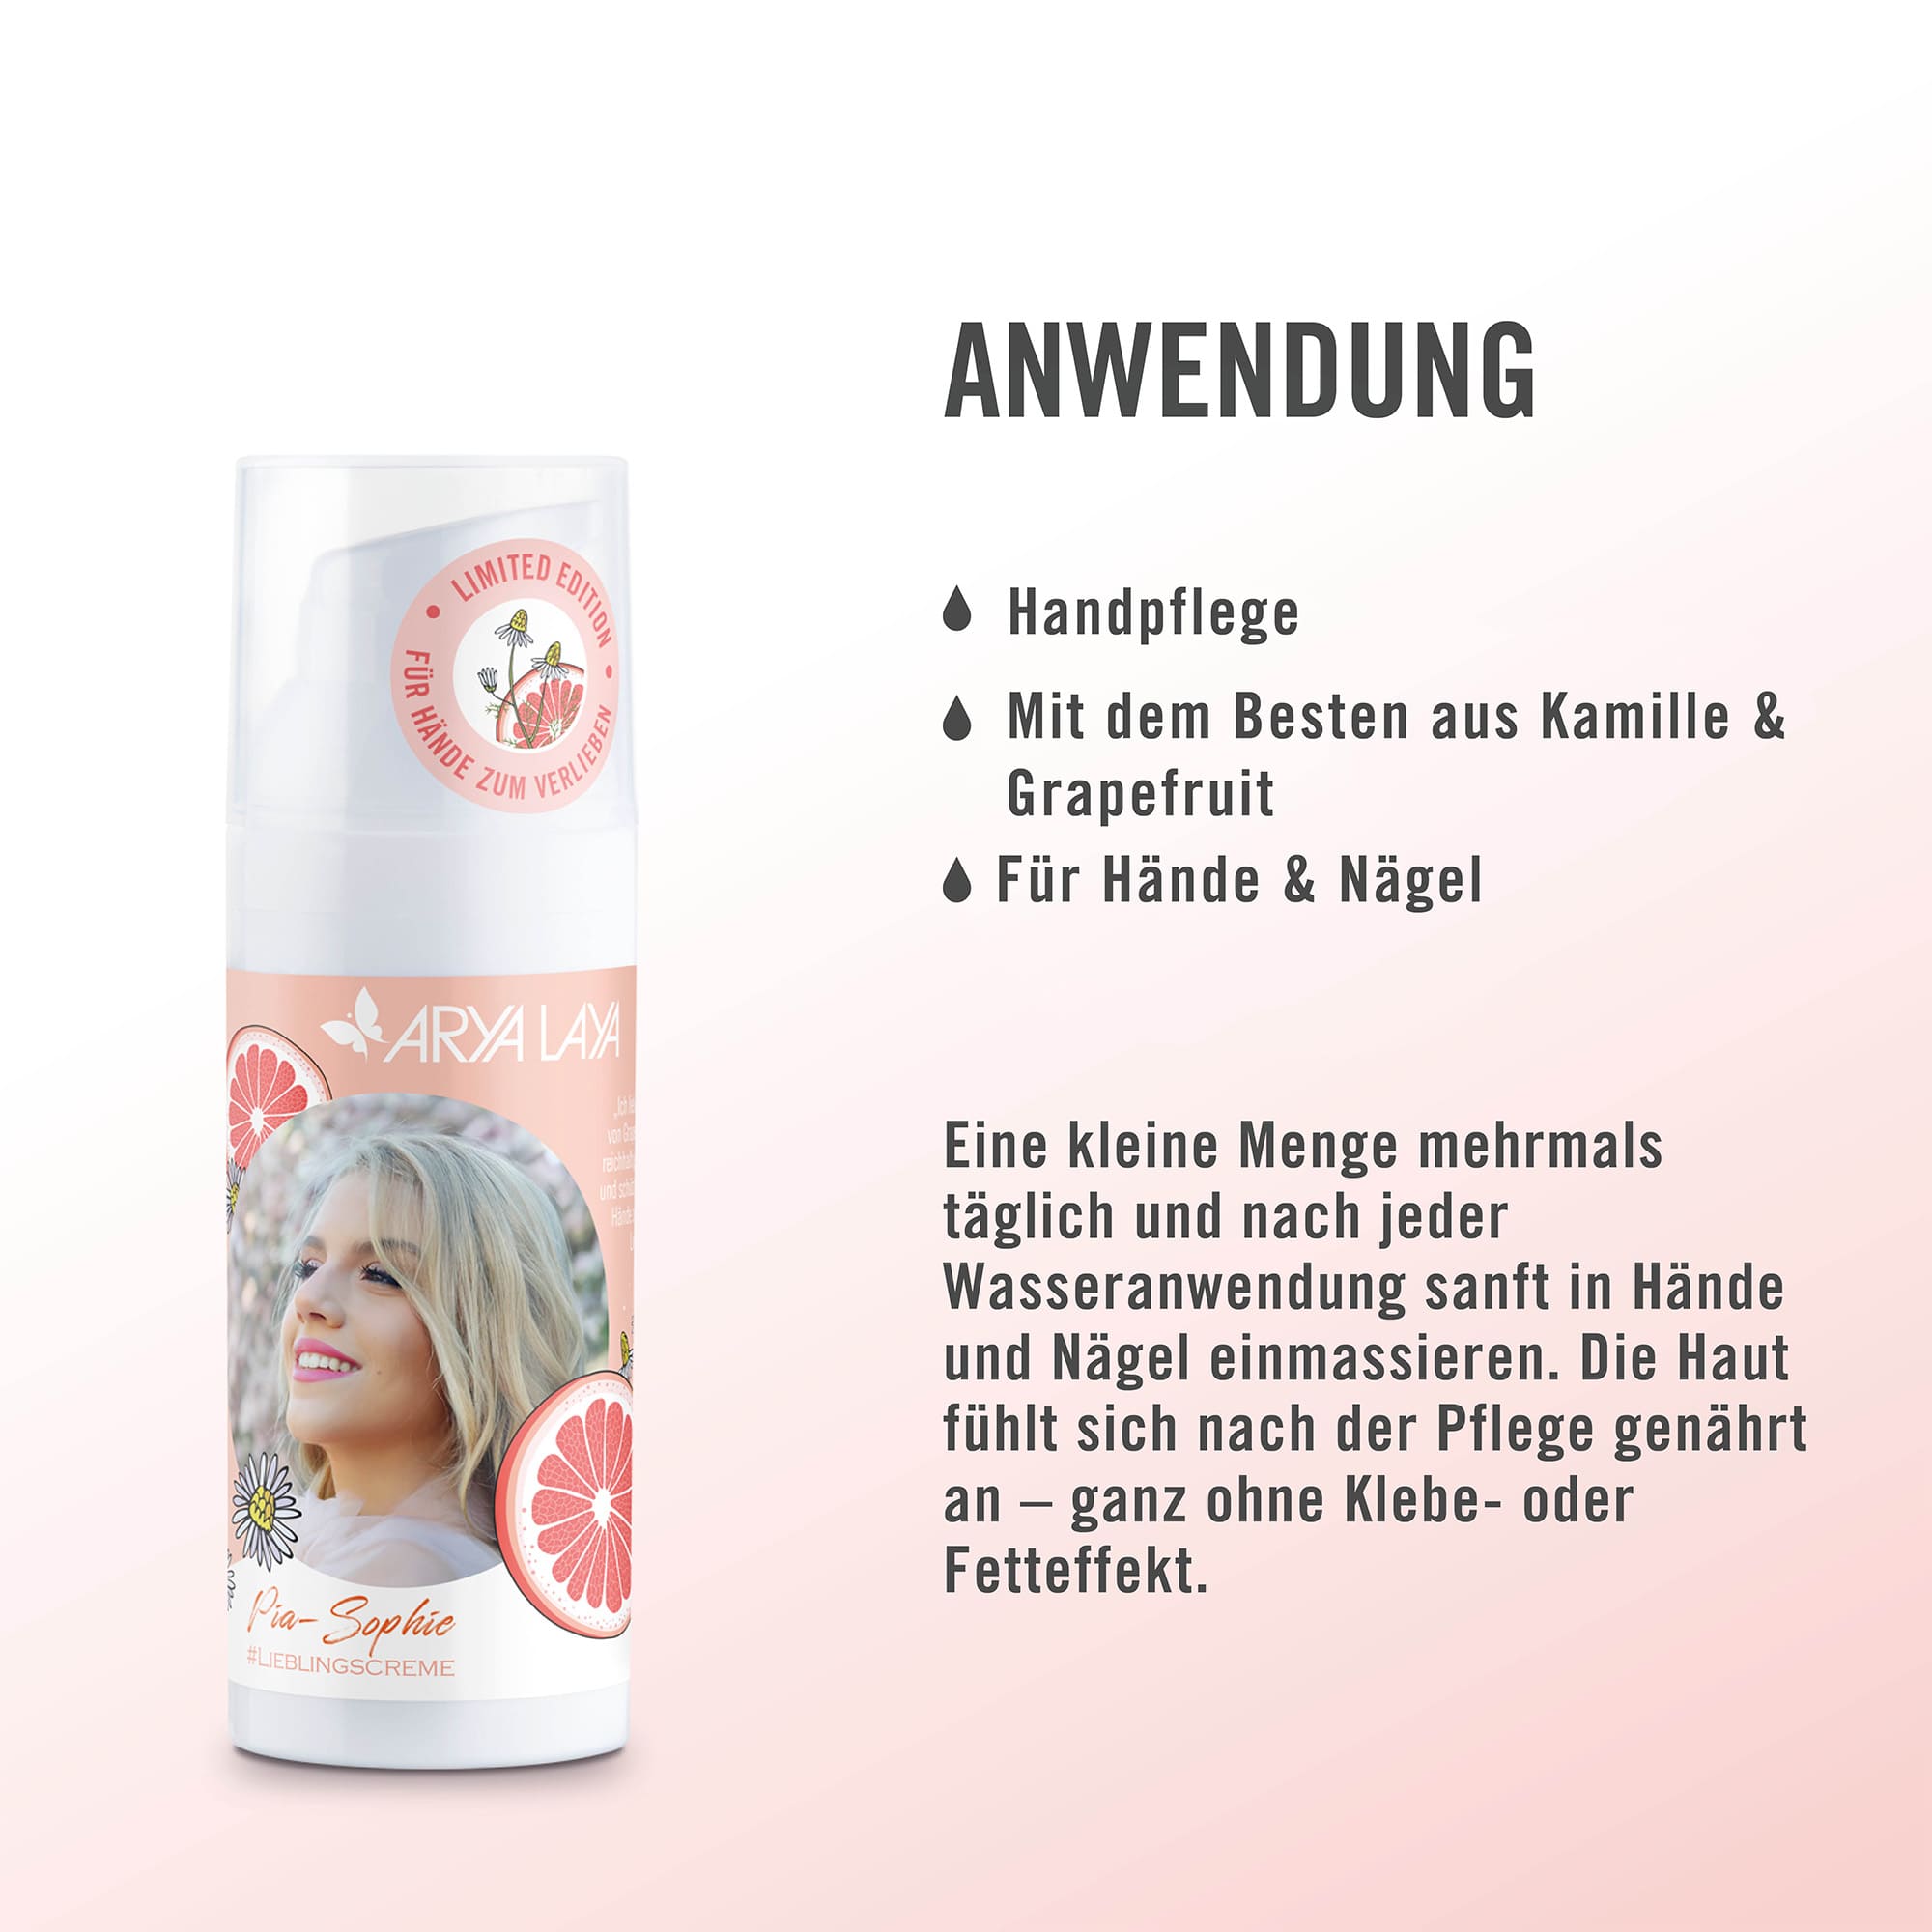 Anwendung ARYA LAYA Kamille-Grapefruit Handpflege Edition Pia-Sophie, 50 ml